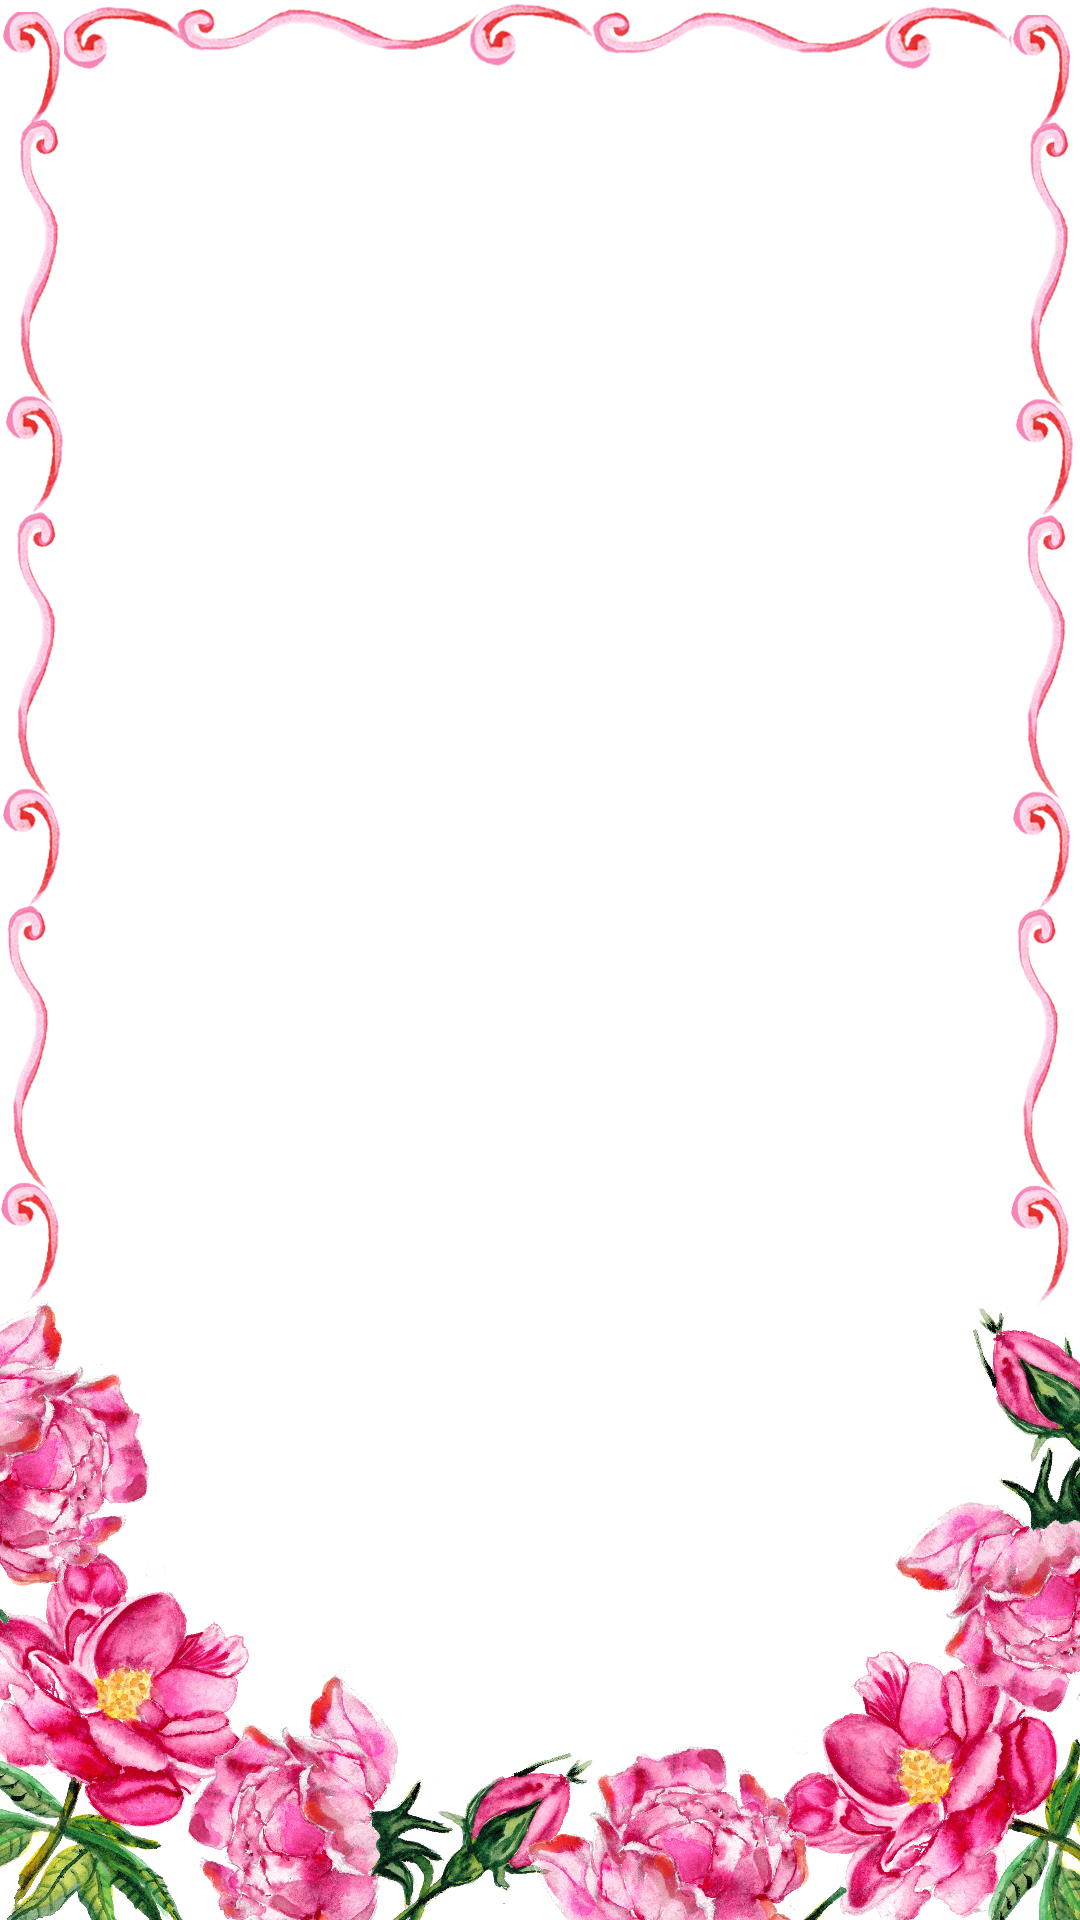 Pink Floral Border PNG Transparent Image